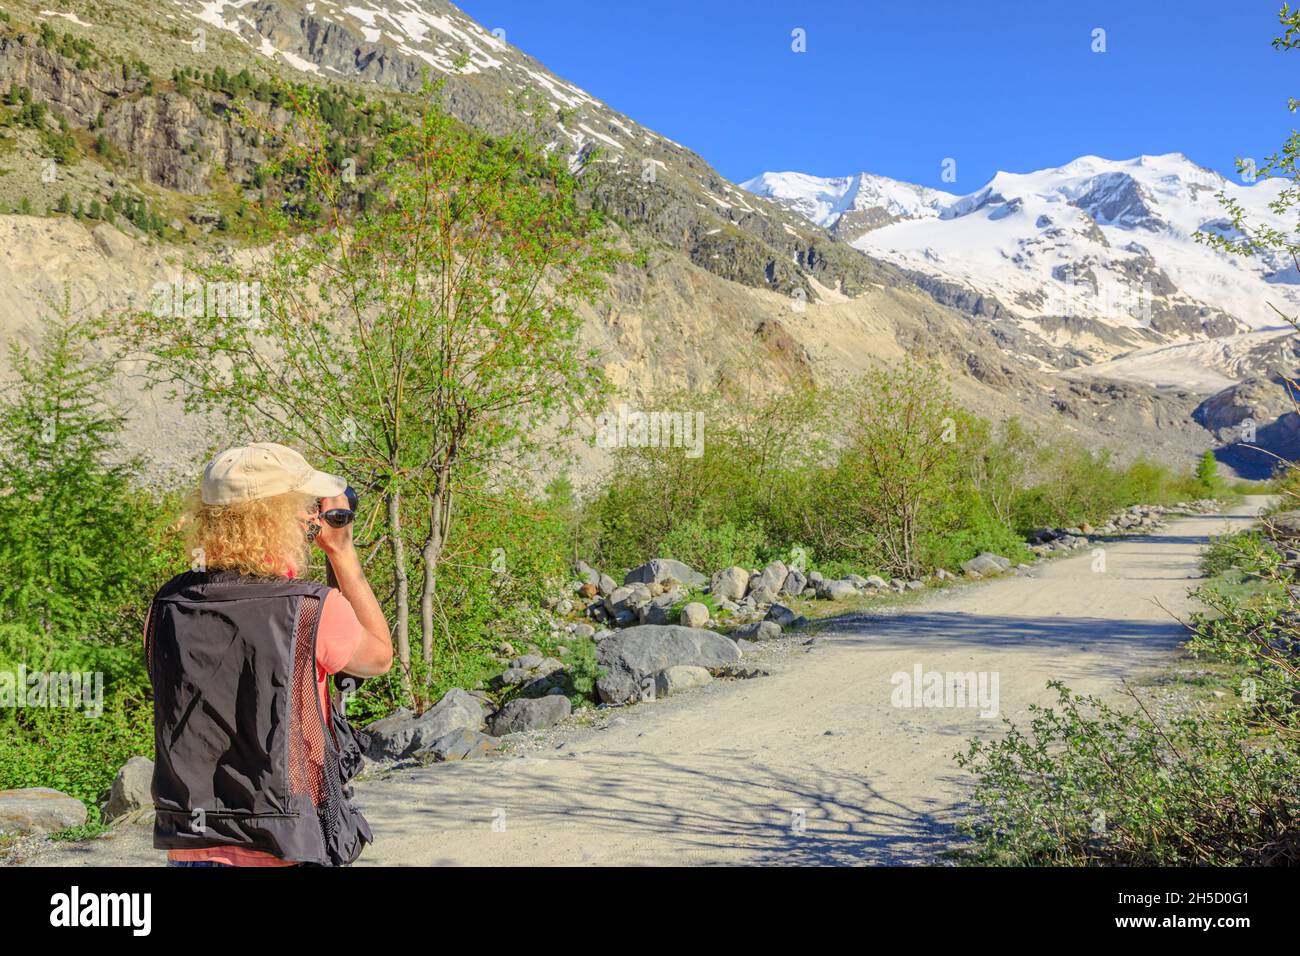 Fotografo uomo con una macchina fotografica che riprende il ghiacciaio Morteratsch sul sentiero in Svizzera. Il più grande ghiacciaio della catena Bernina delle Alpi di Bundner in Foto Stock